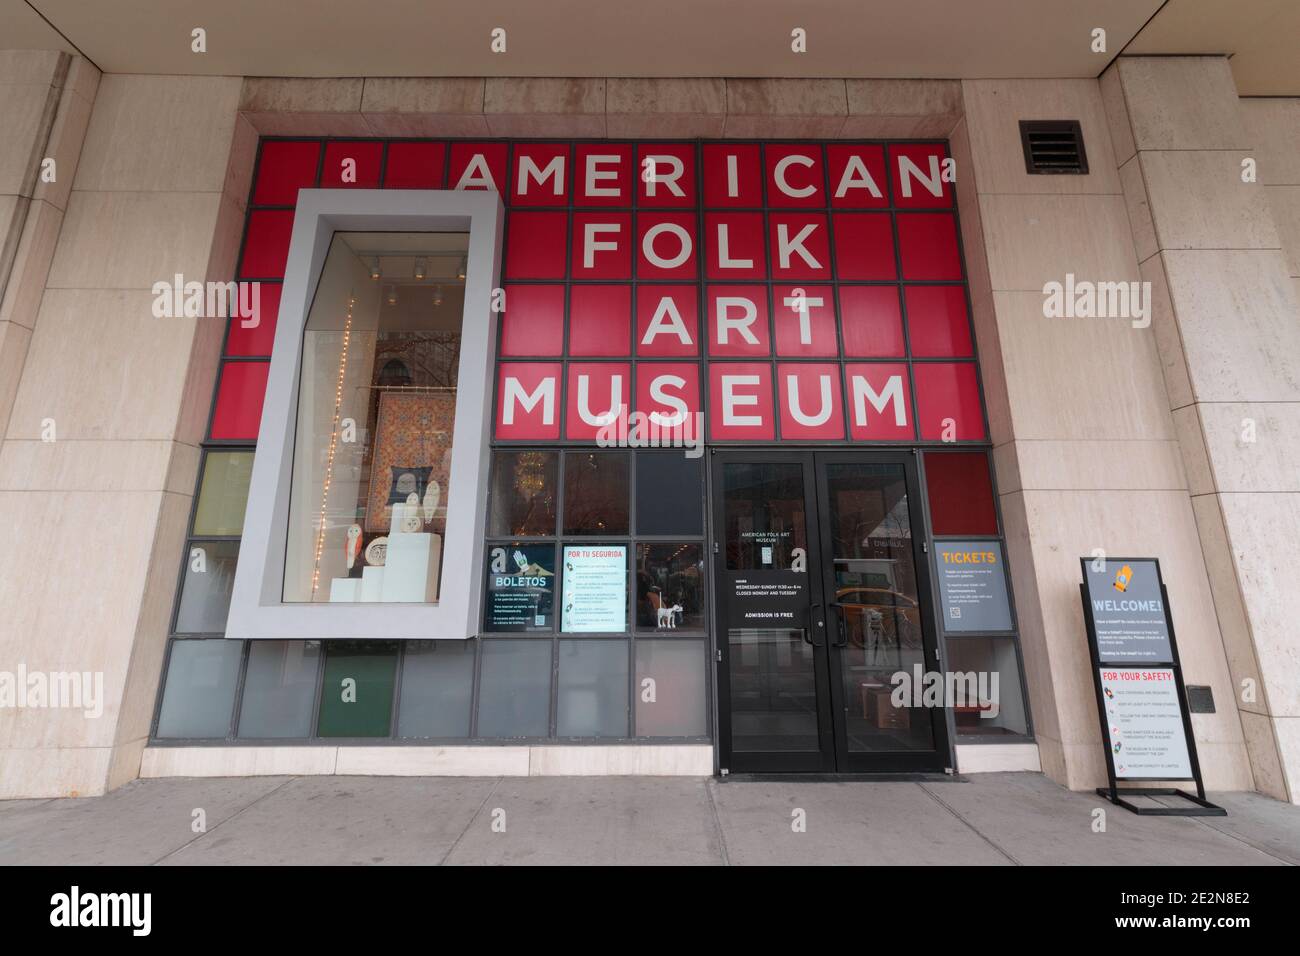 L'American Folk Art Museum de Manhattan, New York, à Lincoln Square, expose des œuvres d'art autodidacte depuis son ouverture en 1961 Banque D'Images